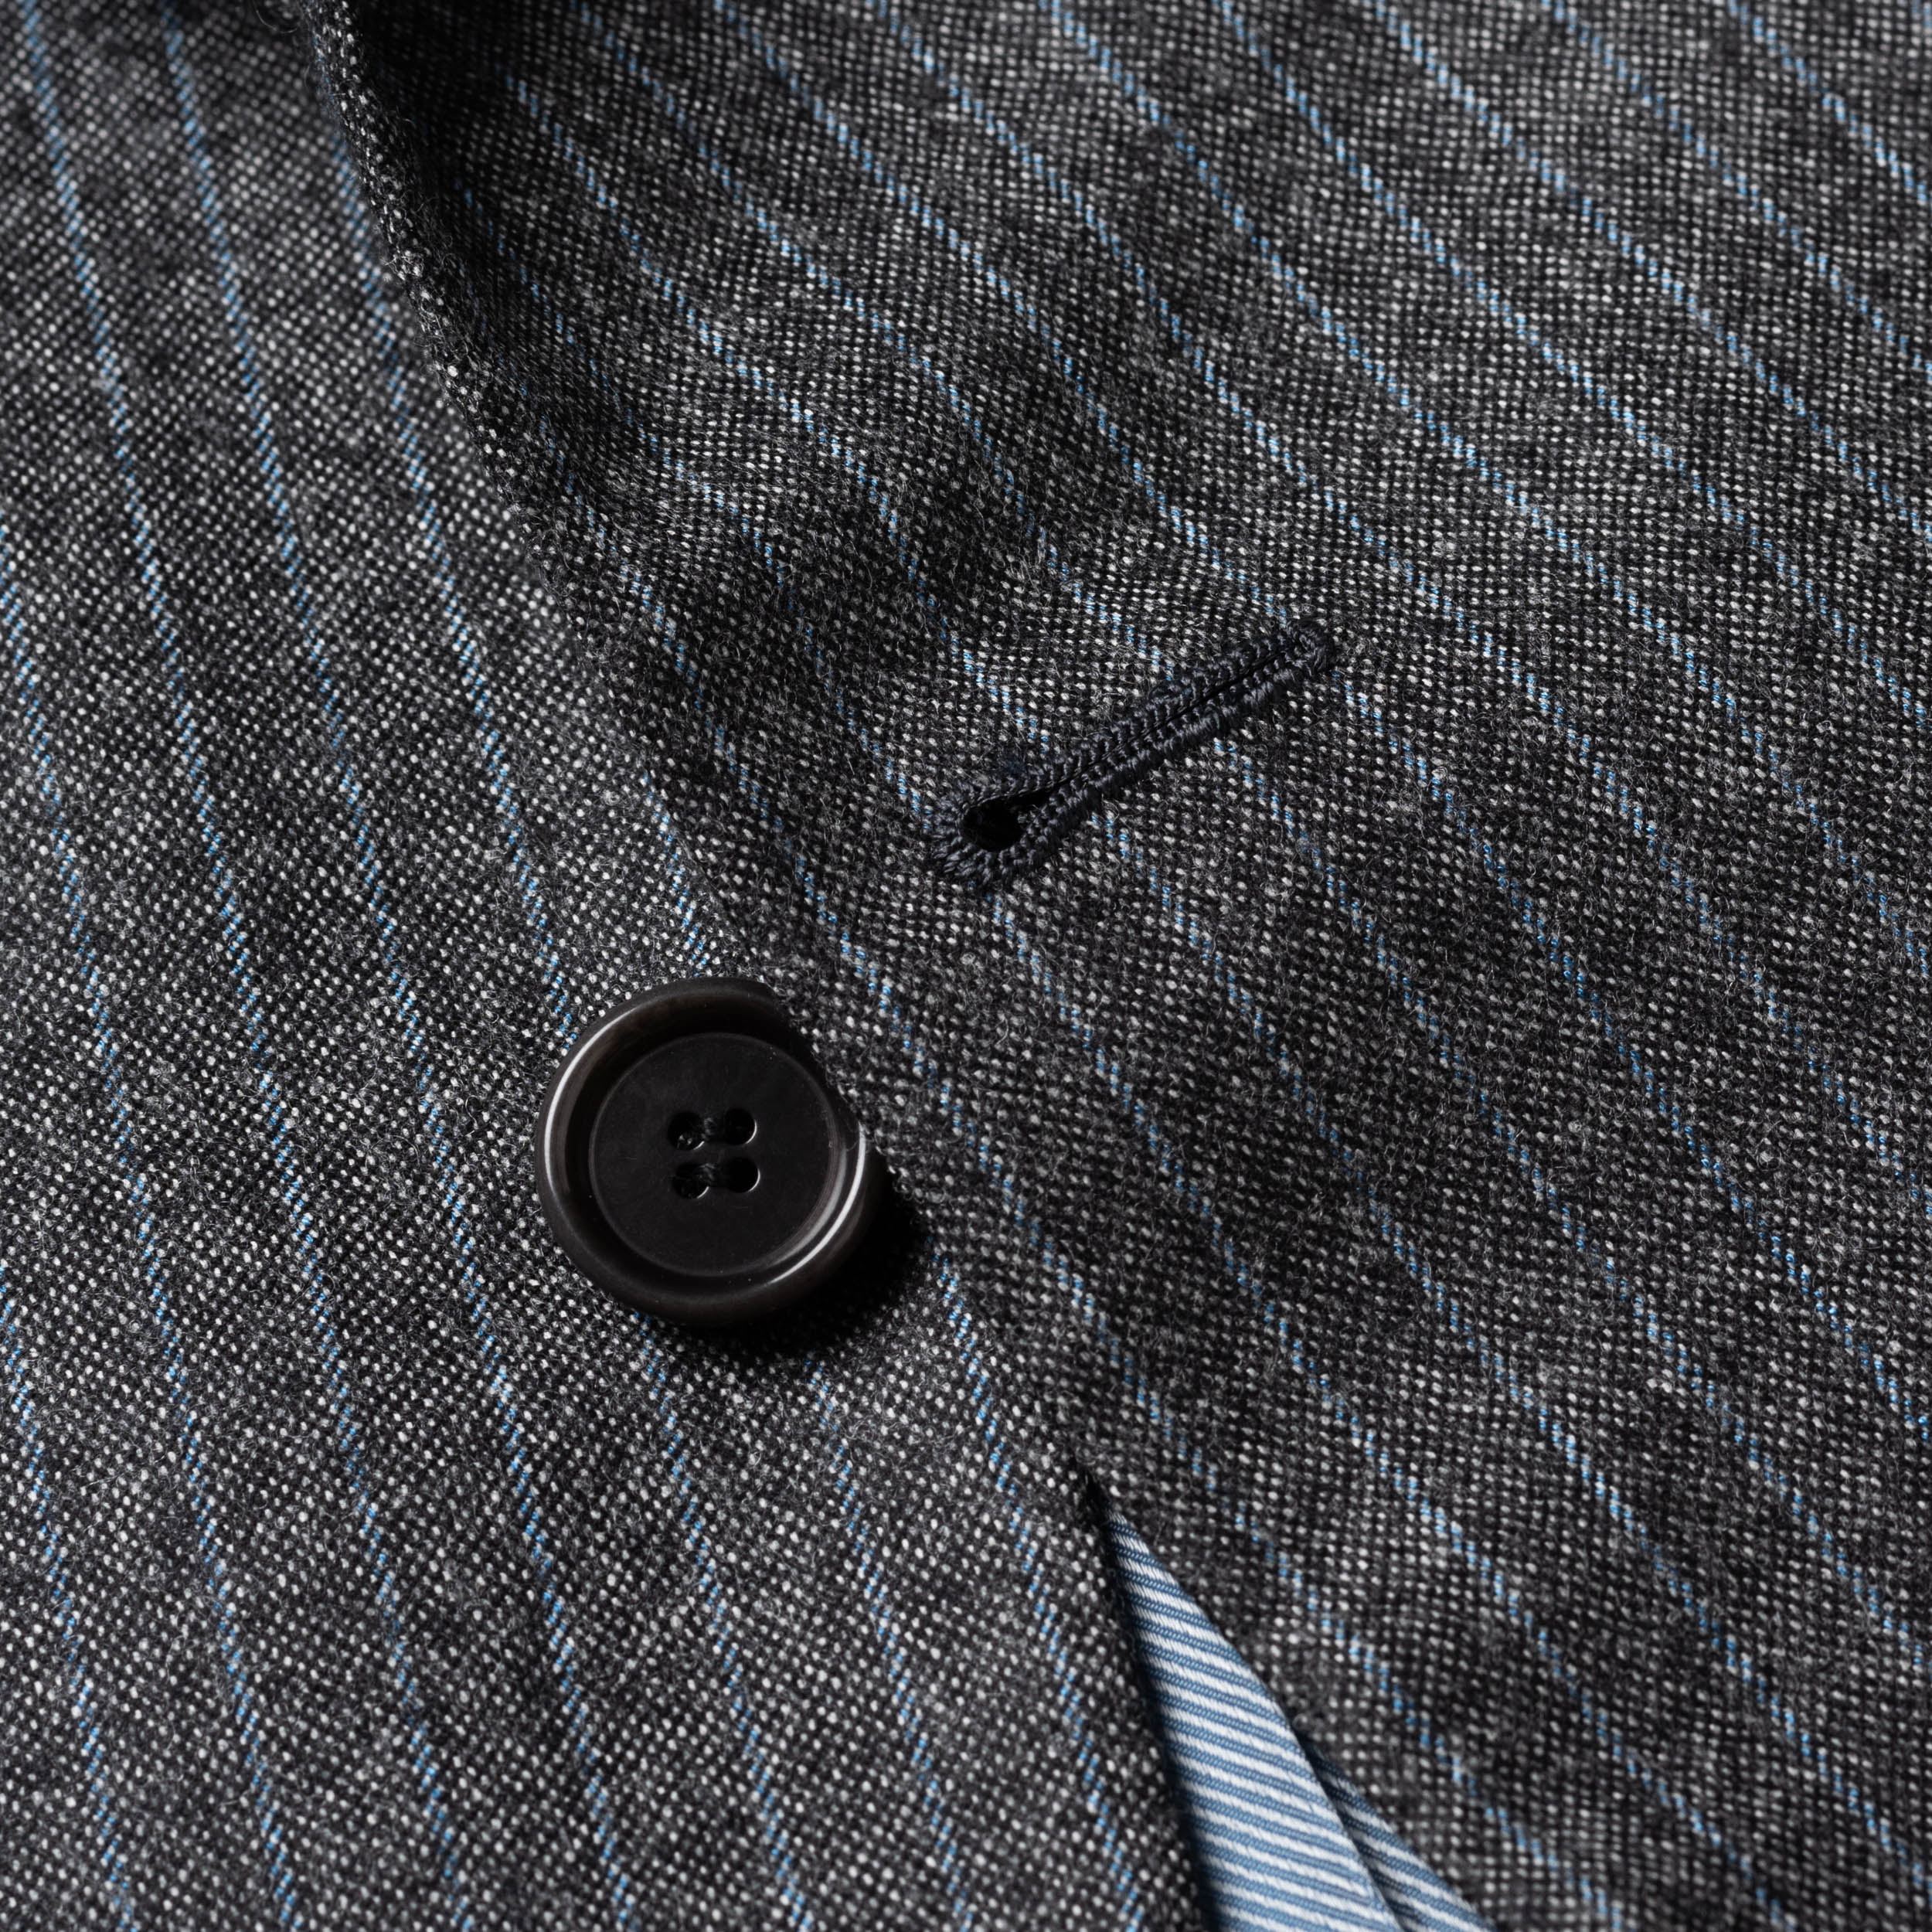 CESARE ATTOLINI Gray Striped Wool Super 120's Cashmere Flannel Suit 60 NEW US 50 CESARE ATTOLINI